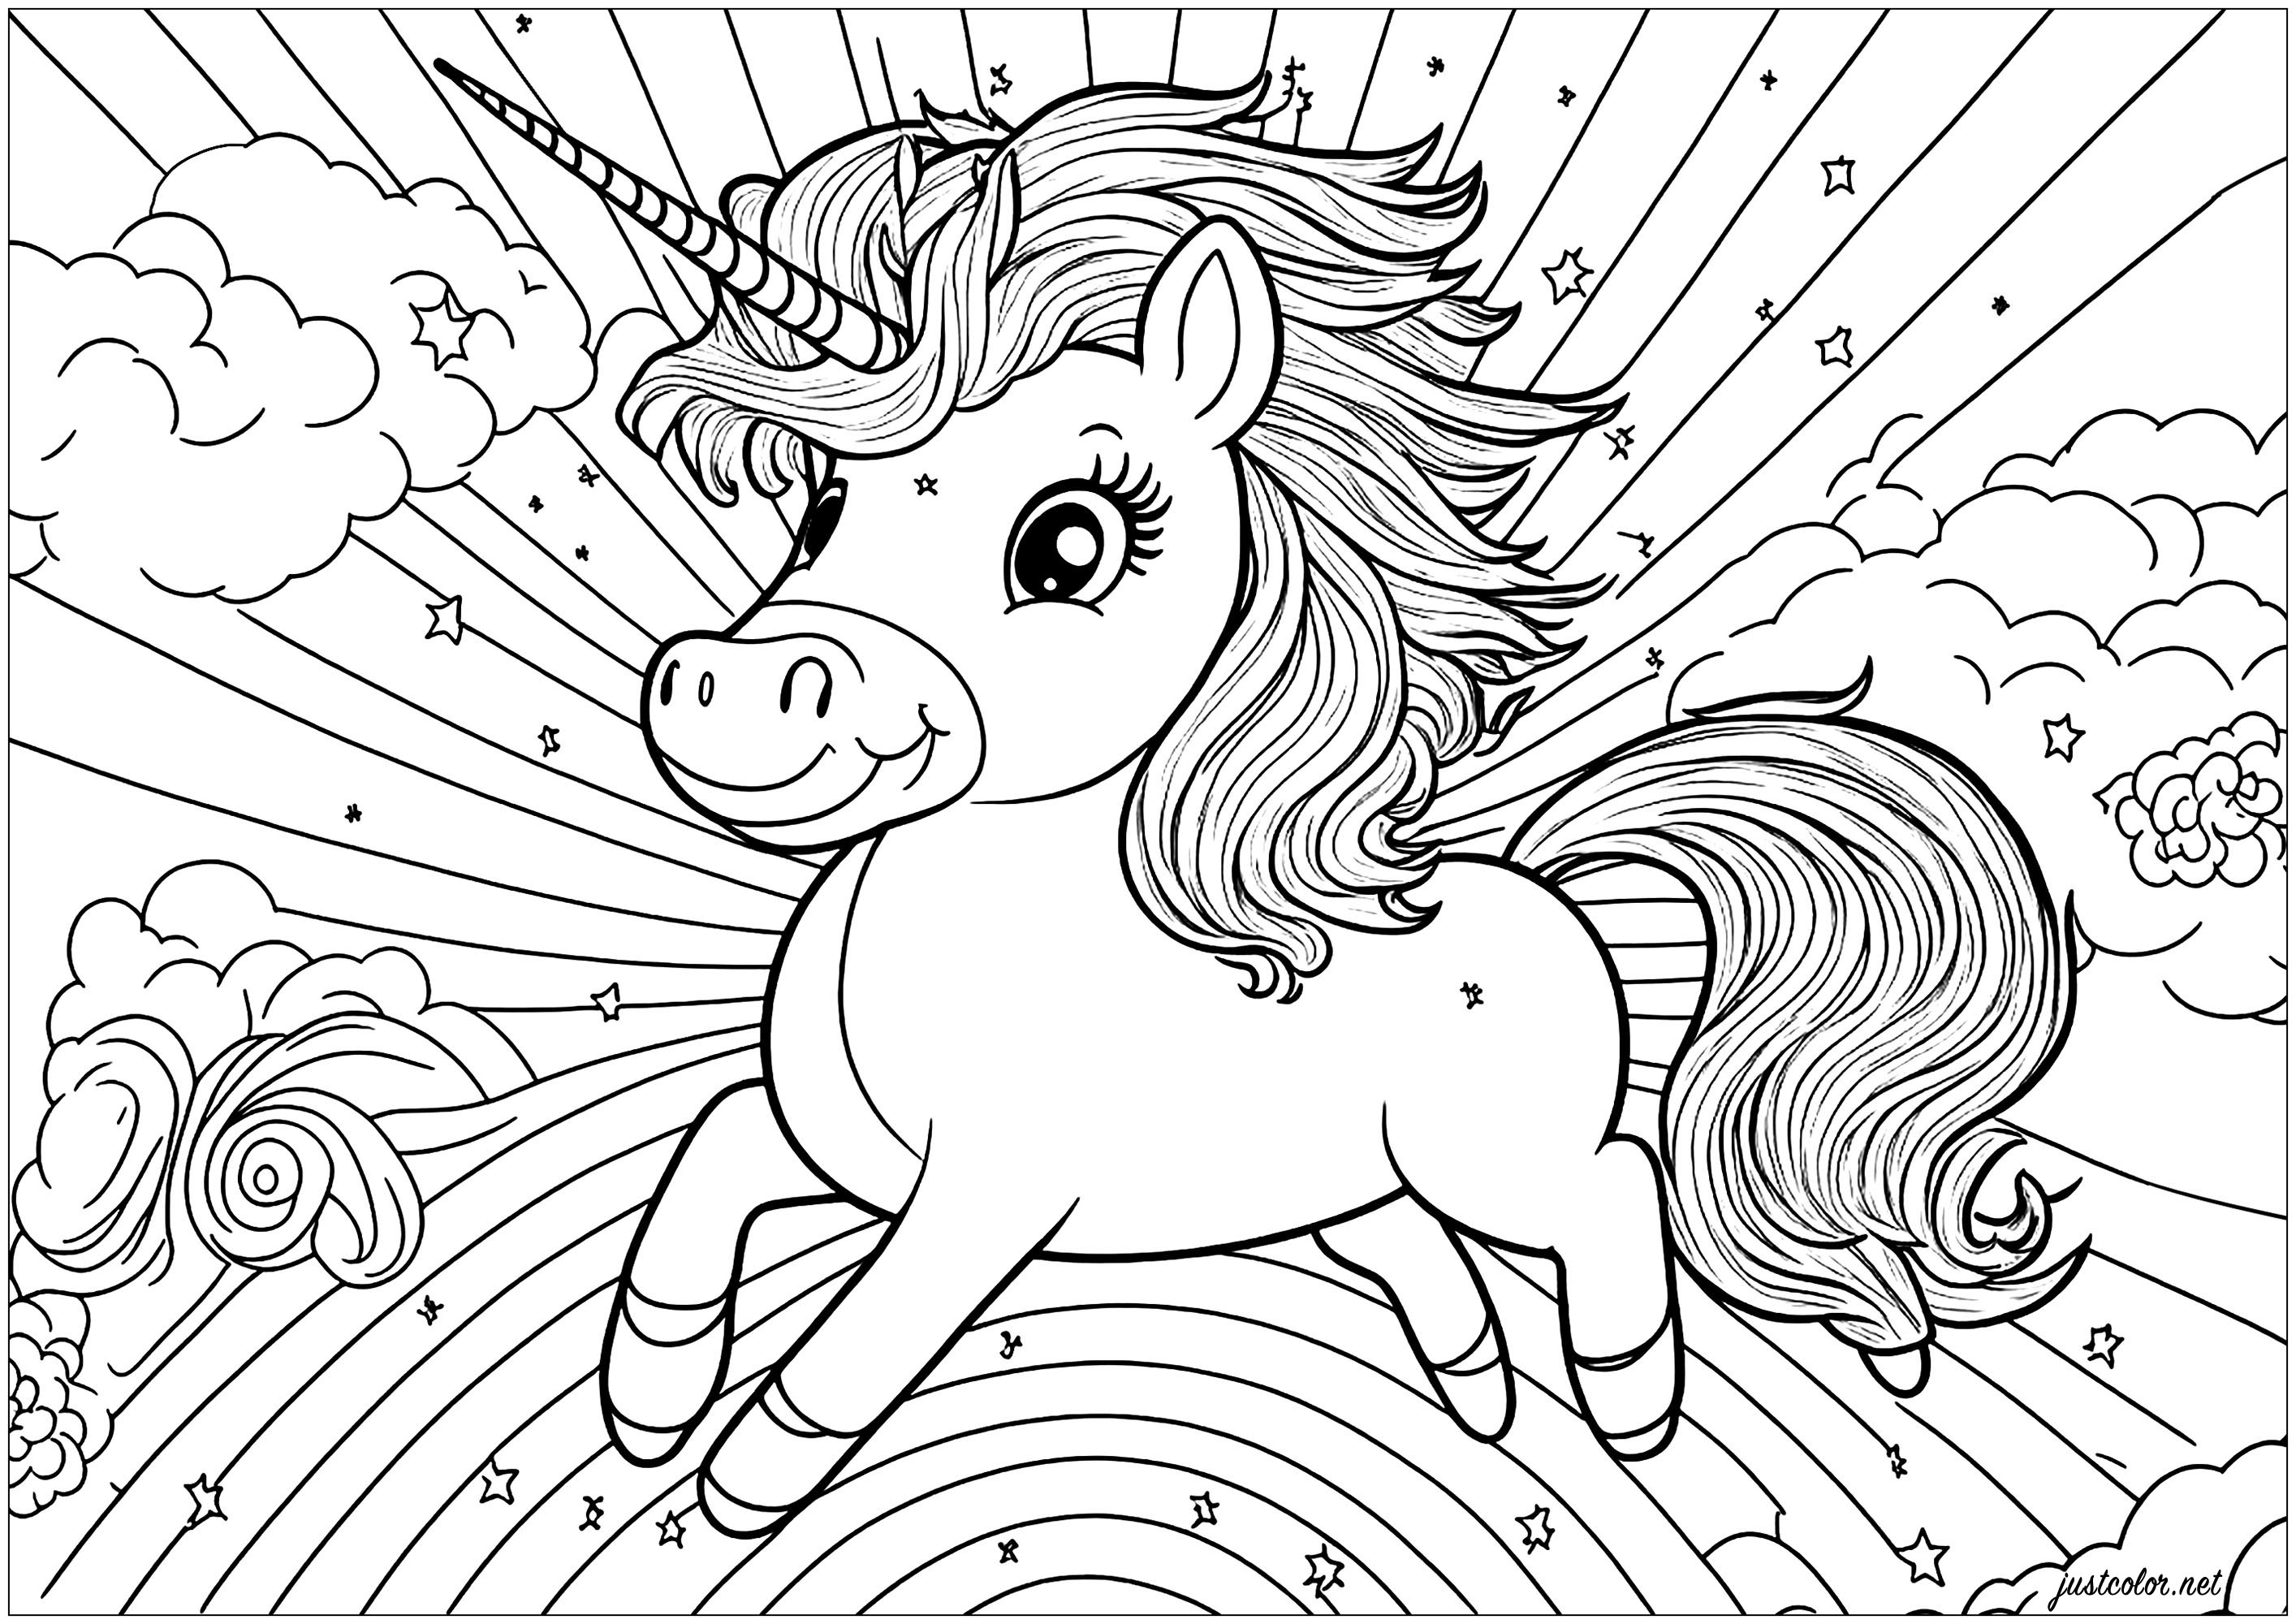 10 Desenhos de Unicórnio para Imprimir e Colorir  Unicorn coloring pages,  Coloring pages, Coloring books